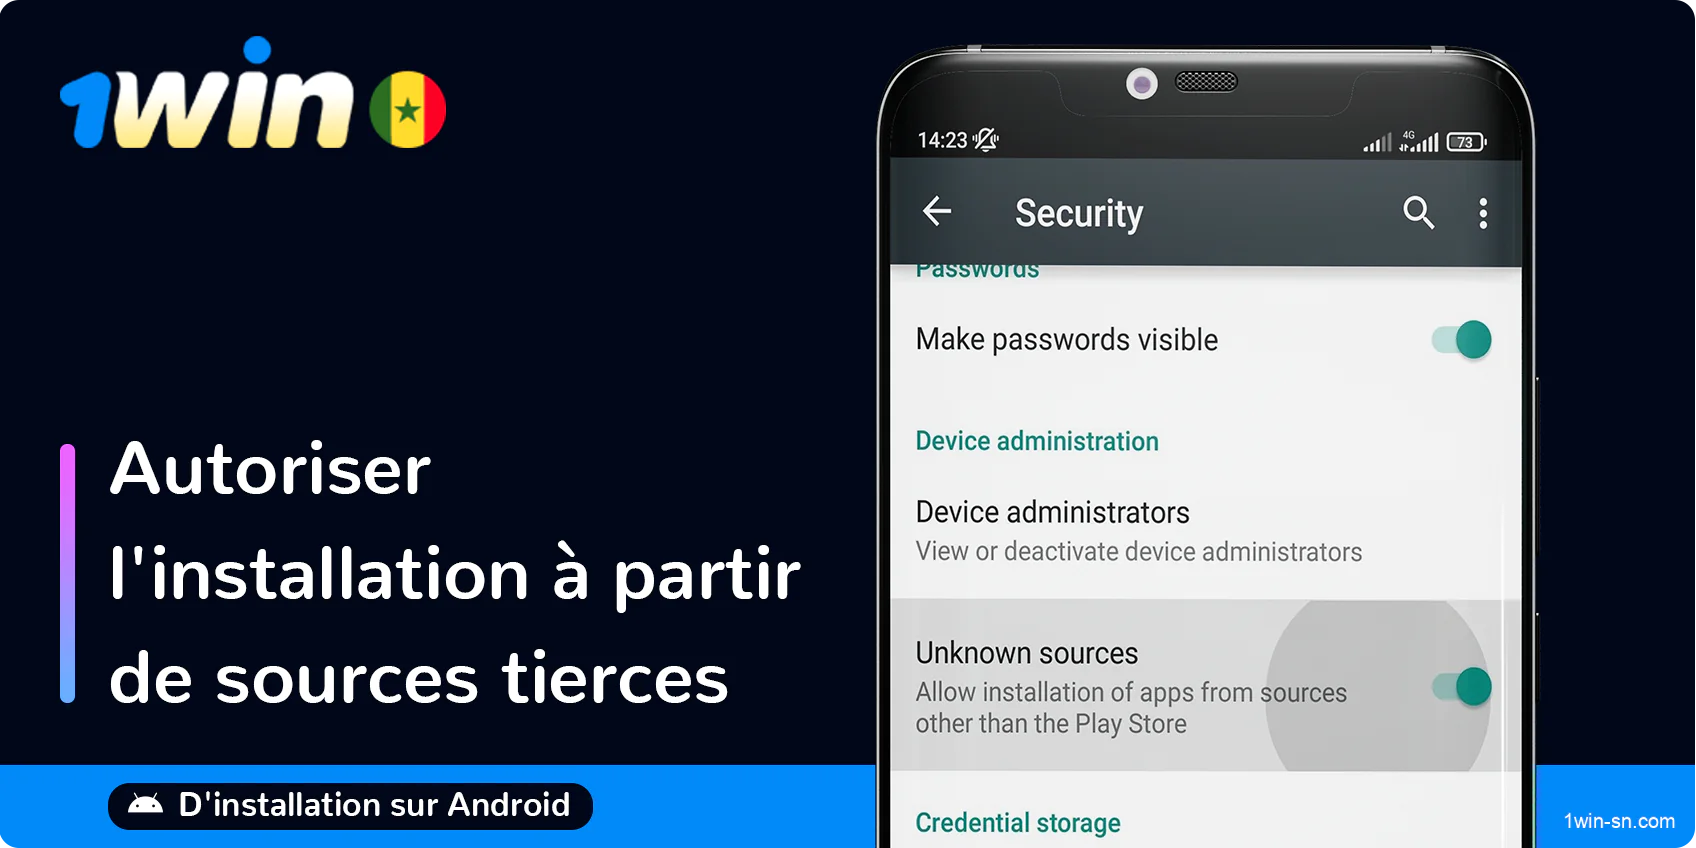 Autoriser l'installation d'applications tierces sur Android, si nécessaire - 1Win App